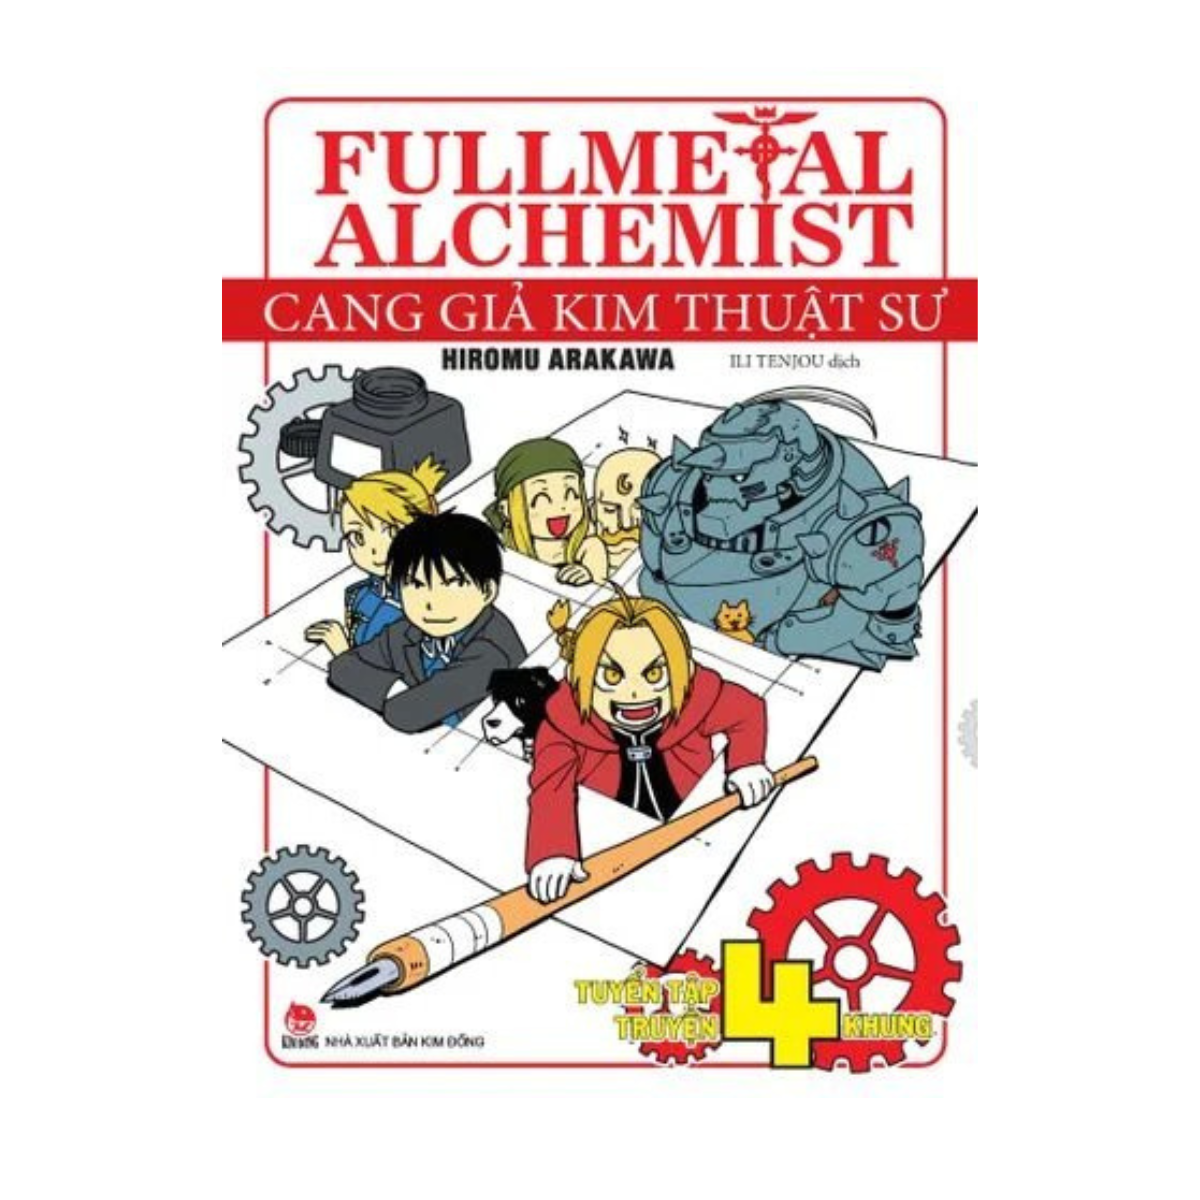 Cang Giả Kim Thuật Sư - Fullmetal Alchemist - Tuyển Tập Truyện 4 Khung